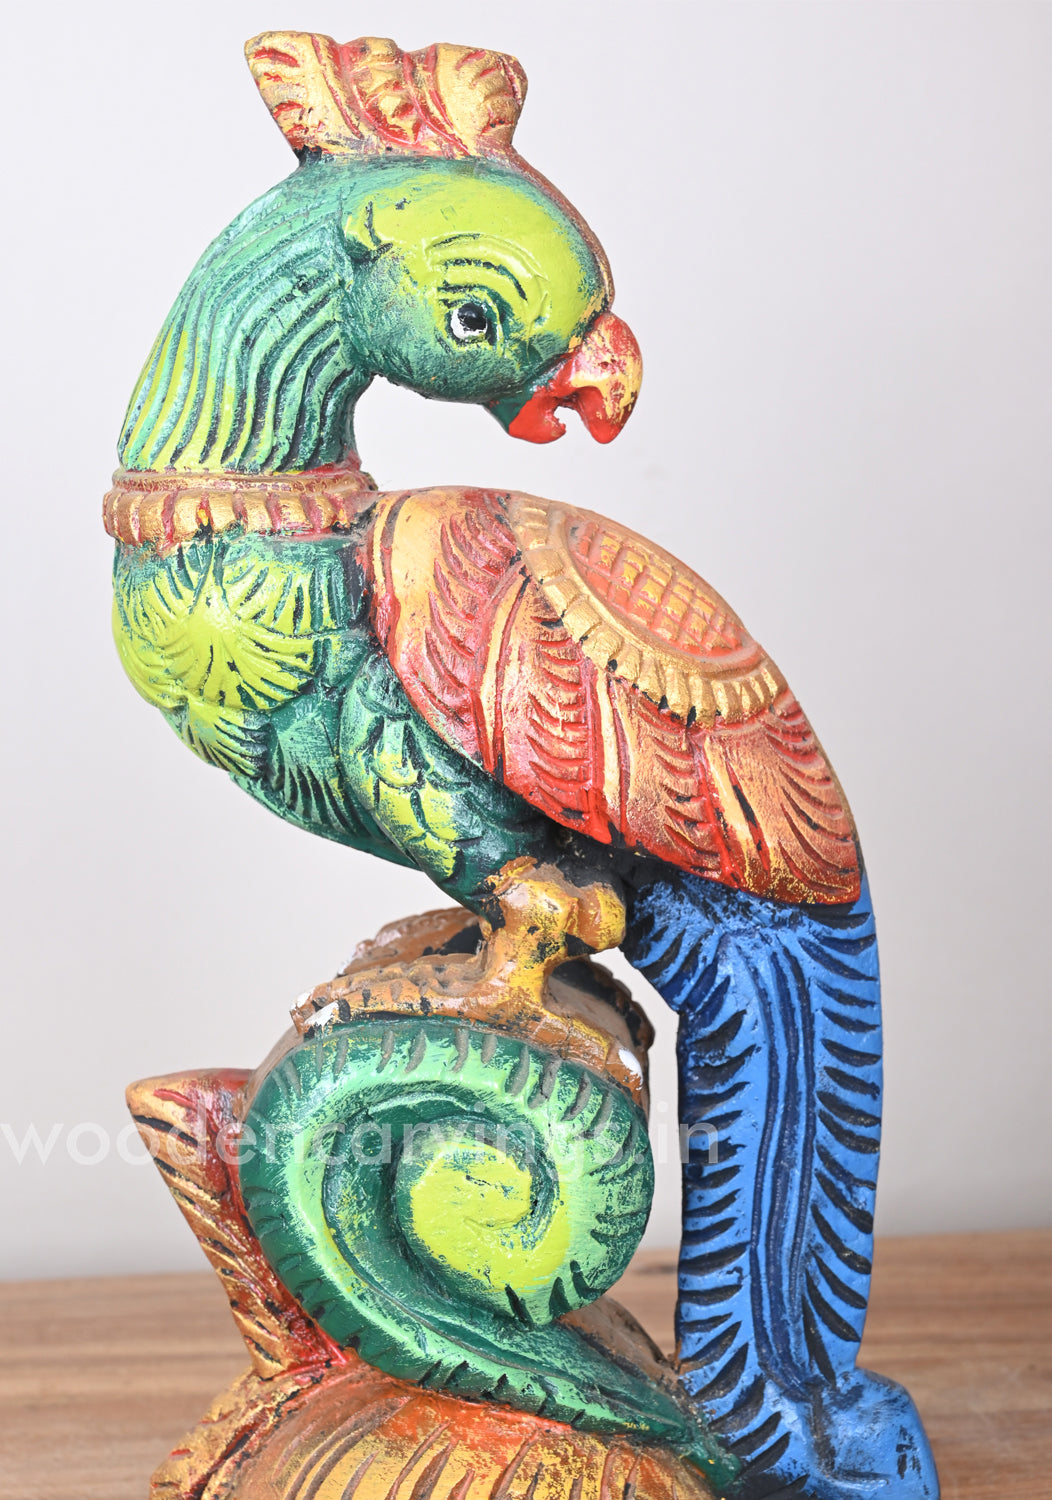 Standing Stunning Green Parrot Showpiece Decorative Sculpture 14"